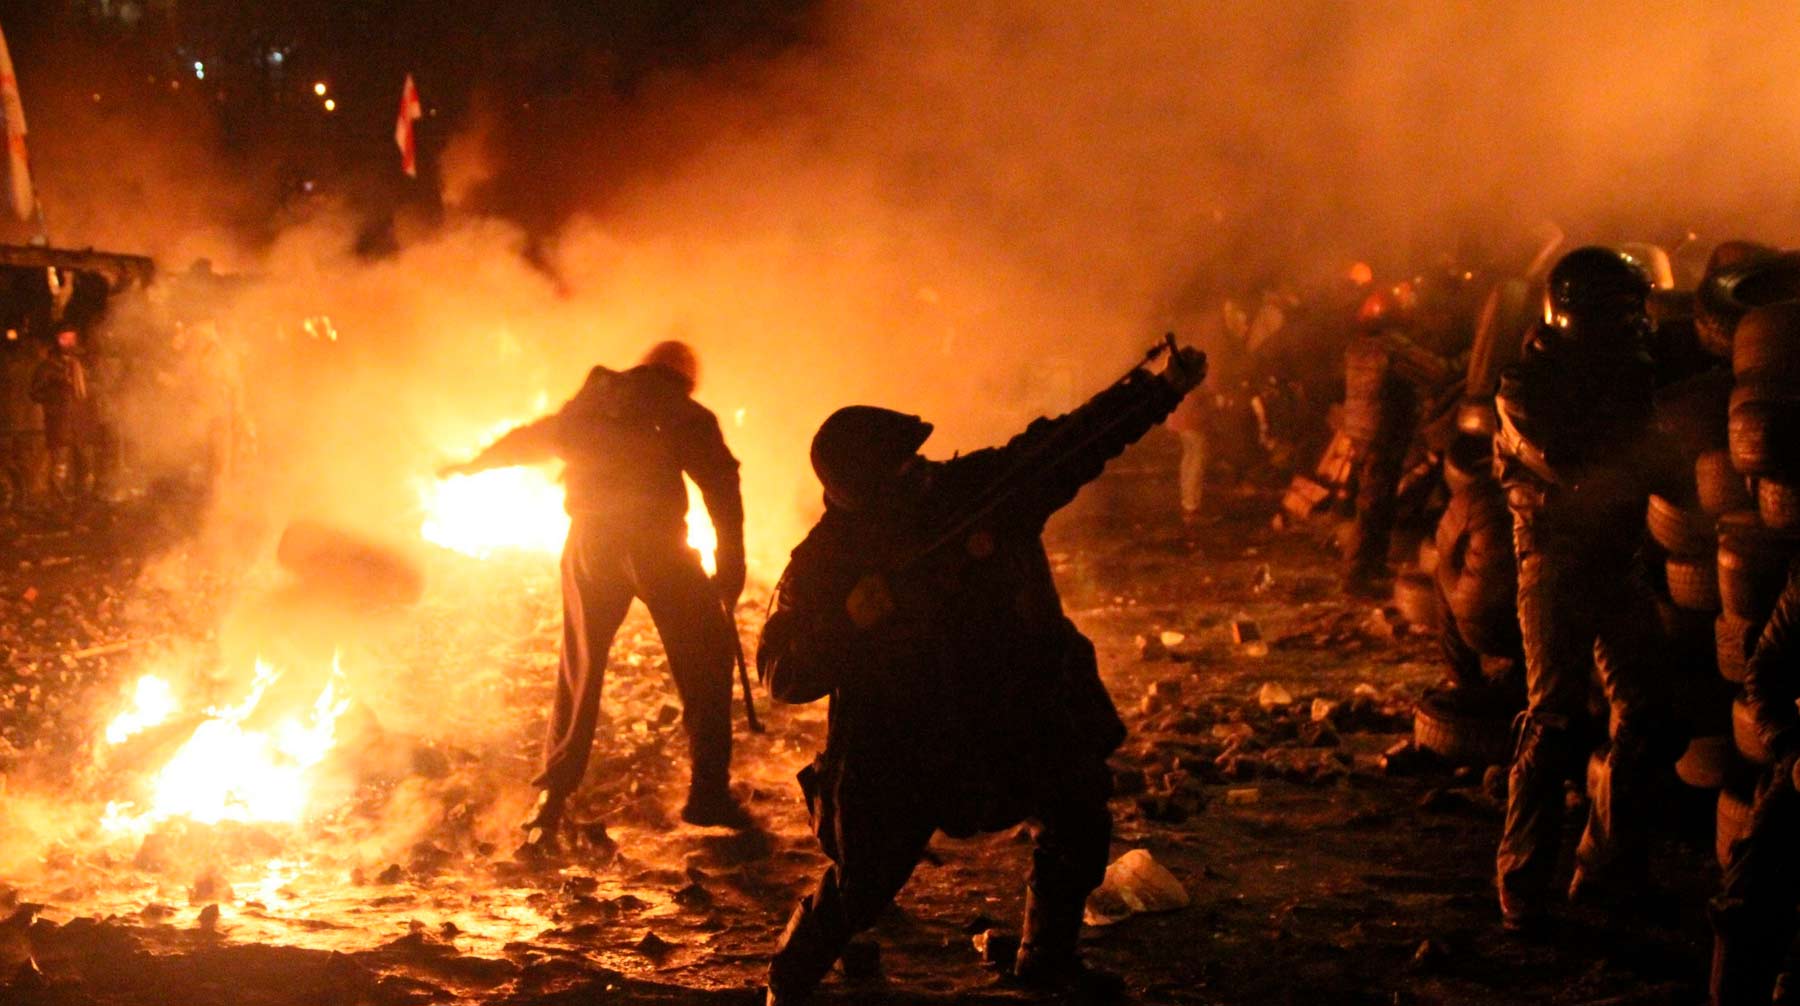 Волнения в стране вызывают у граждан чувство тревожности и опасливость, полагают эксперты Фото: © Global Look Press / Pravda Komsomolskaya